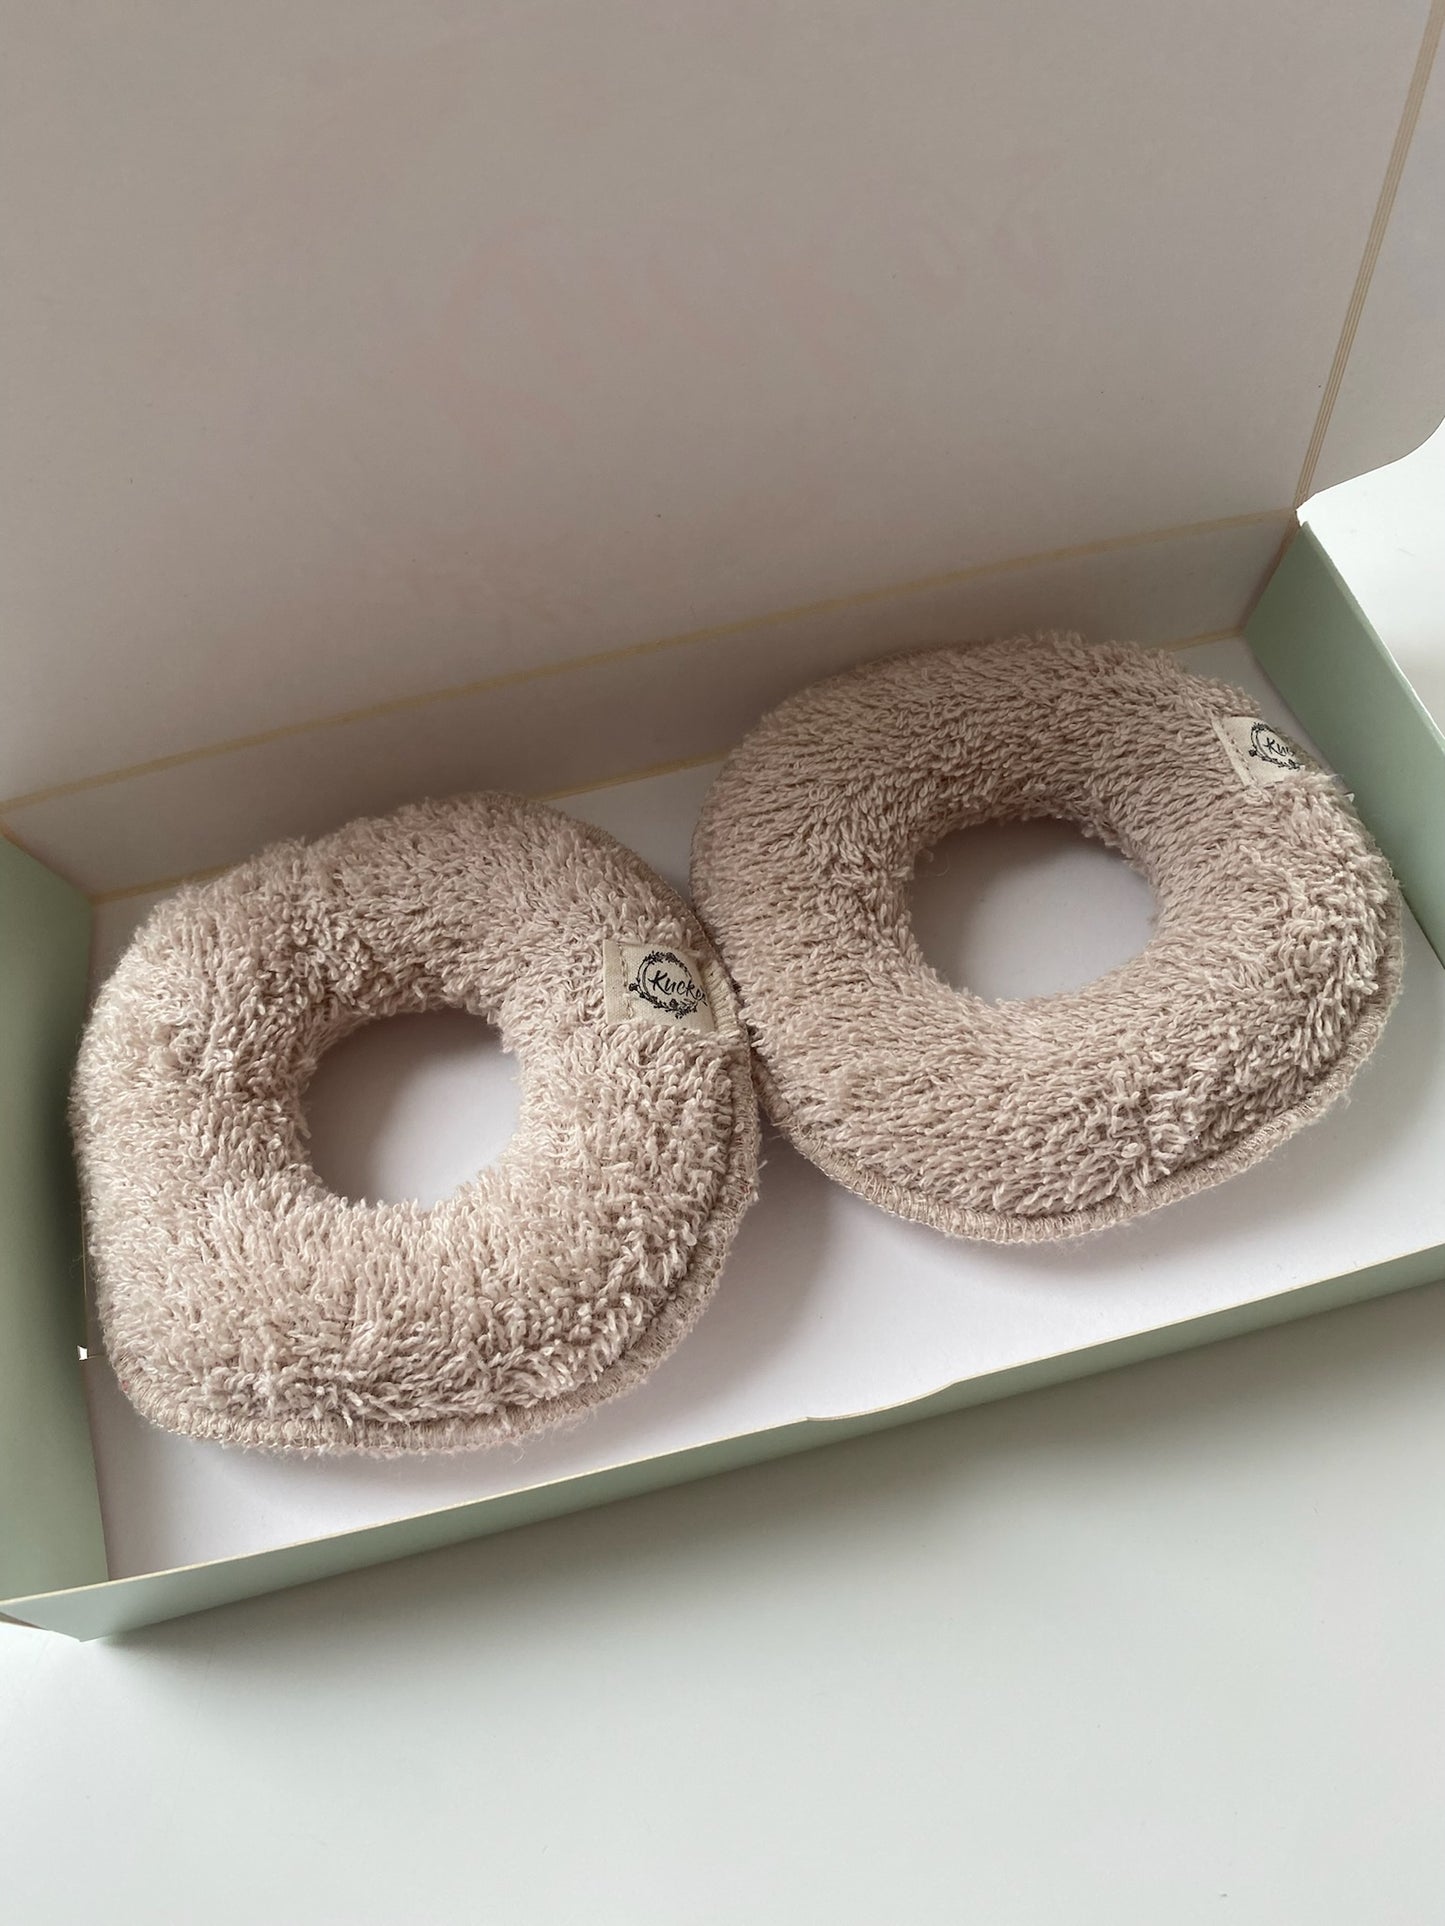 Brust Donuts - Möppis für wunde Brustwarzen